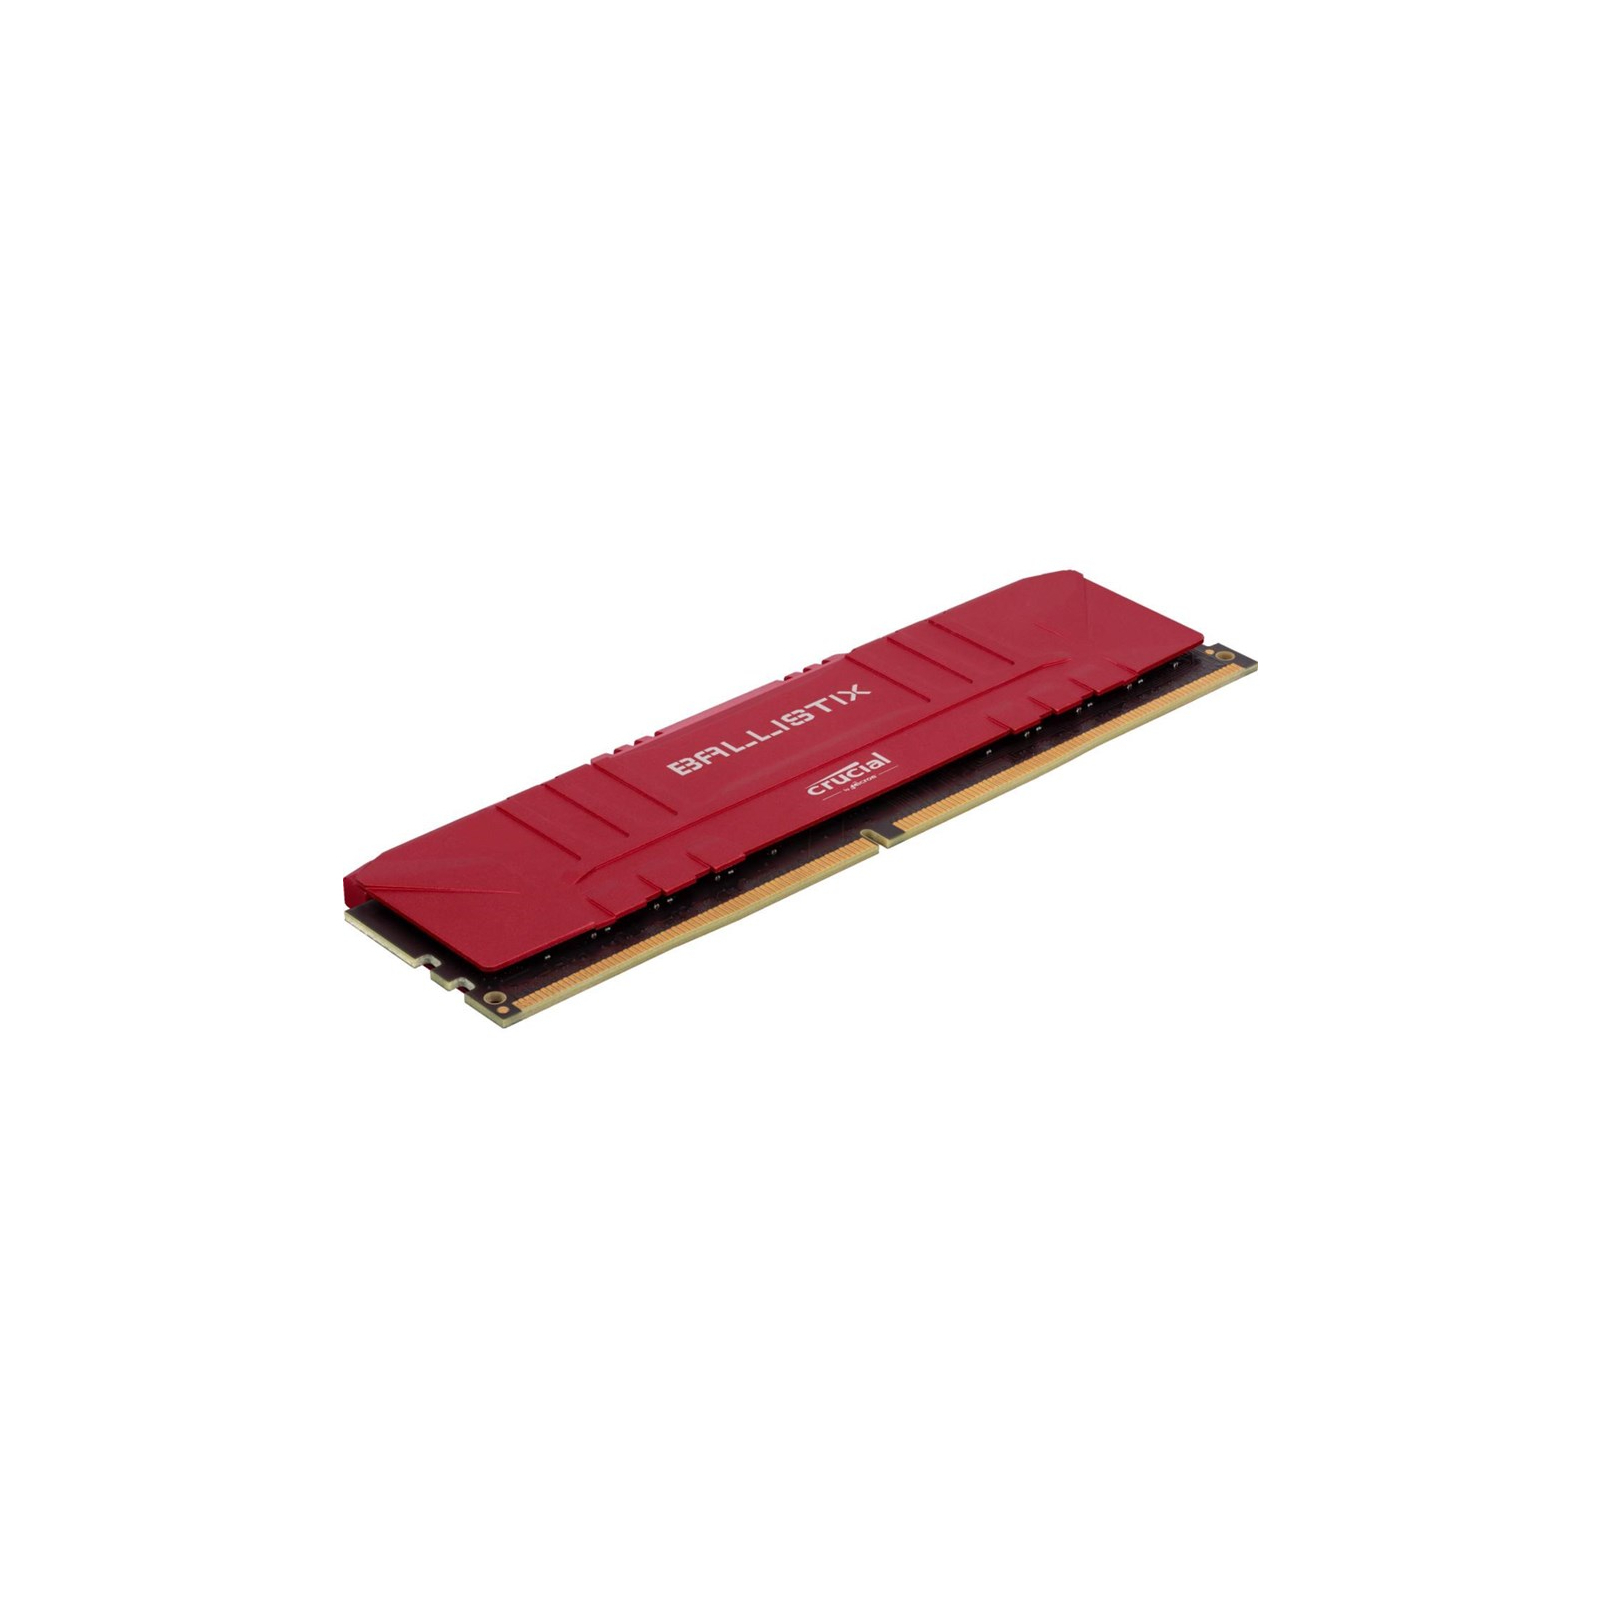 Модуль памяти для компьютера DDR4 32GB (2x16GB) 2666 MHz Ballistix Red Micron (BL2K16G26C16U4R) изображение 2